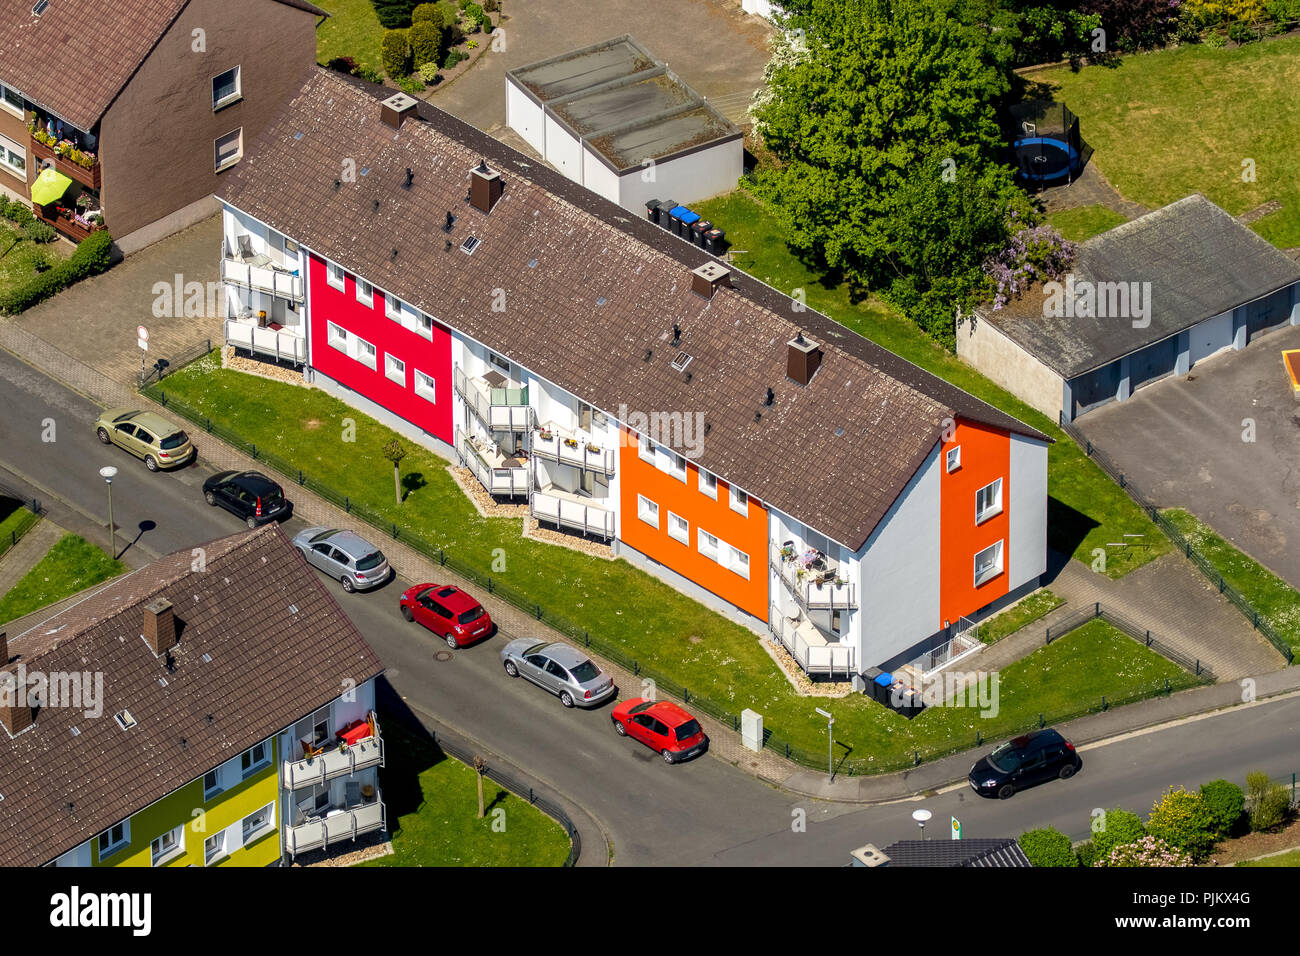 Häuser als Teilnehmer an einer Fassade, Wettbewerb, Mietwohnung, Mehrfamilienhaus, Hamm, Ruhrgebiet, Nordrhein-Westfalen, Deutschland Stockfoto